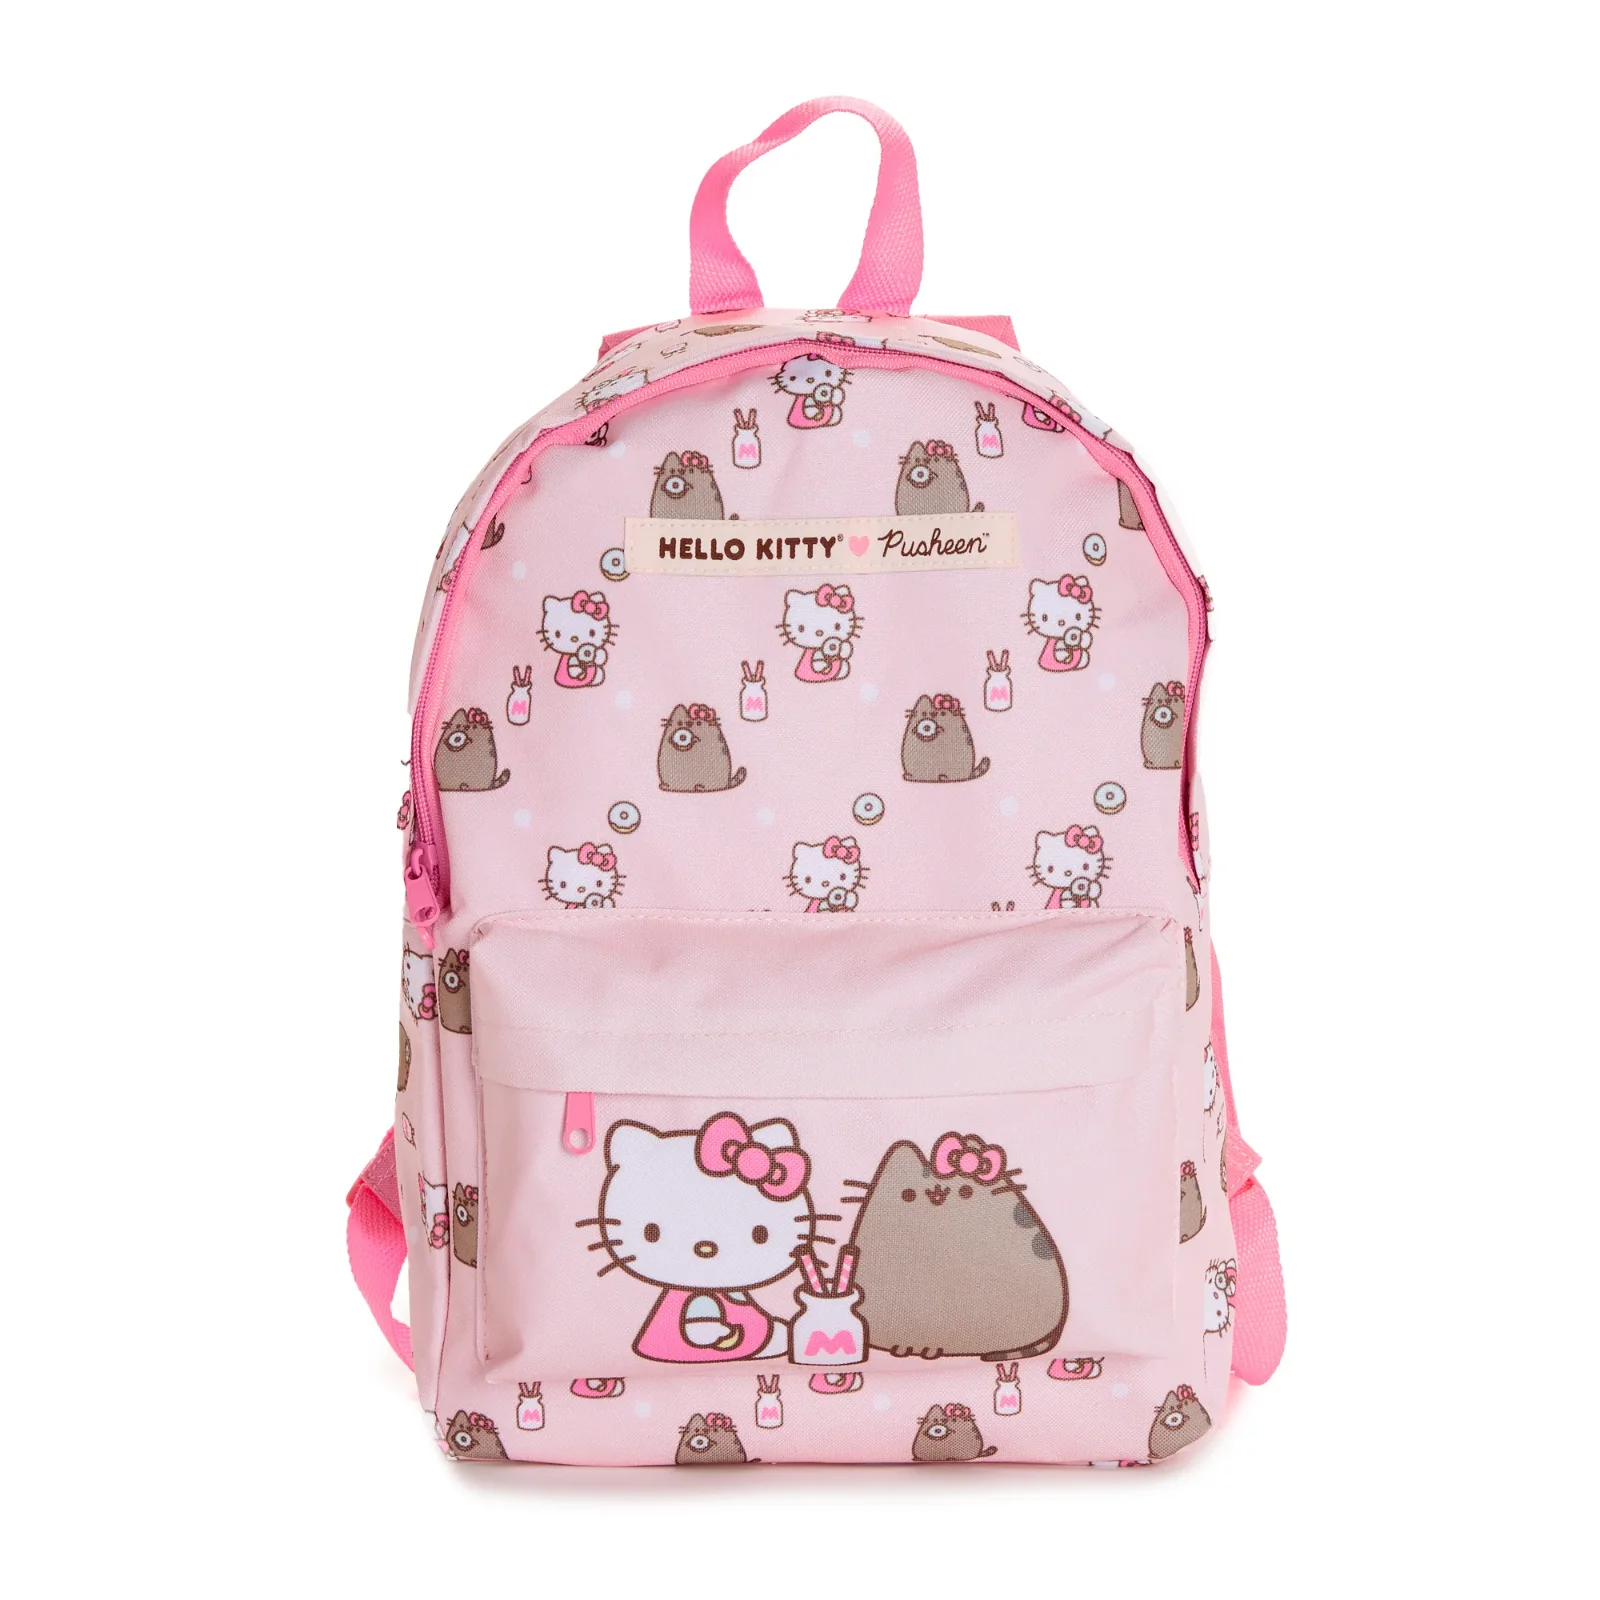 Image of Hello Kitty x Pusheen Backpack